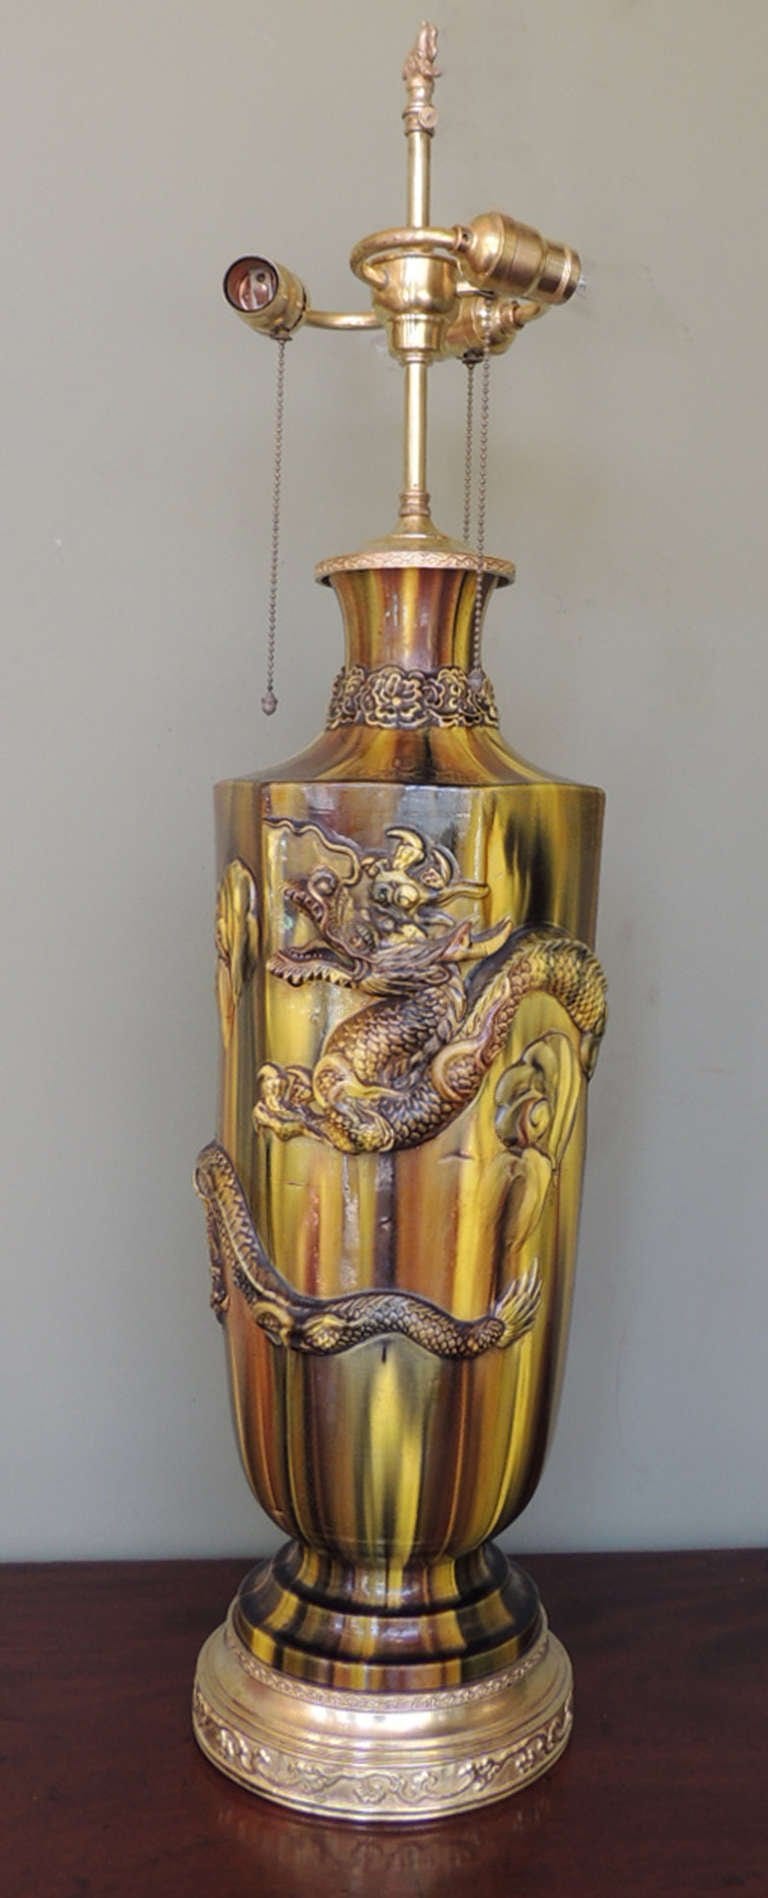 19th Century Chinese Glazed Ceramic Lamp